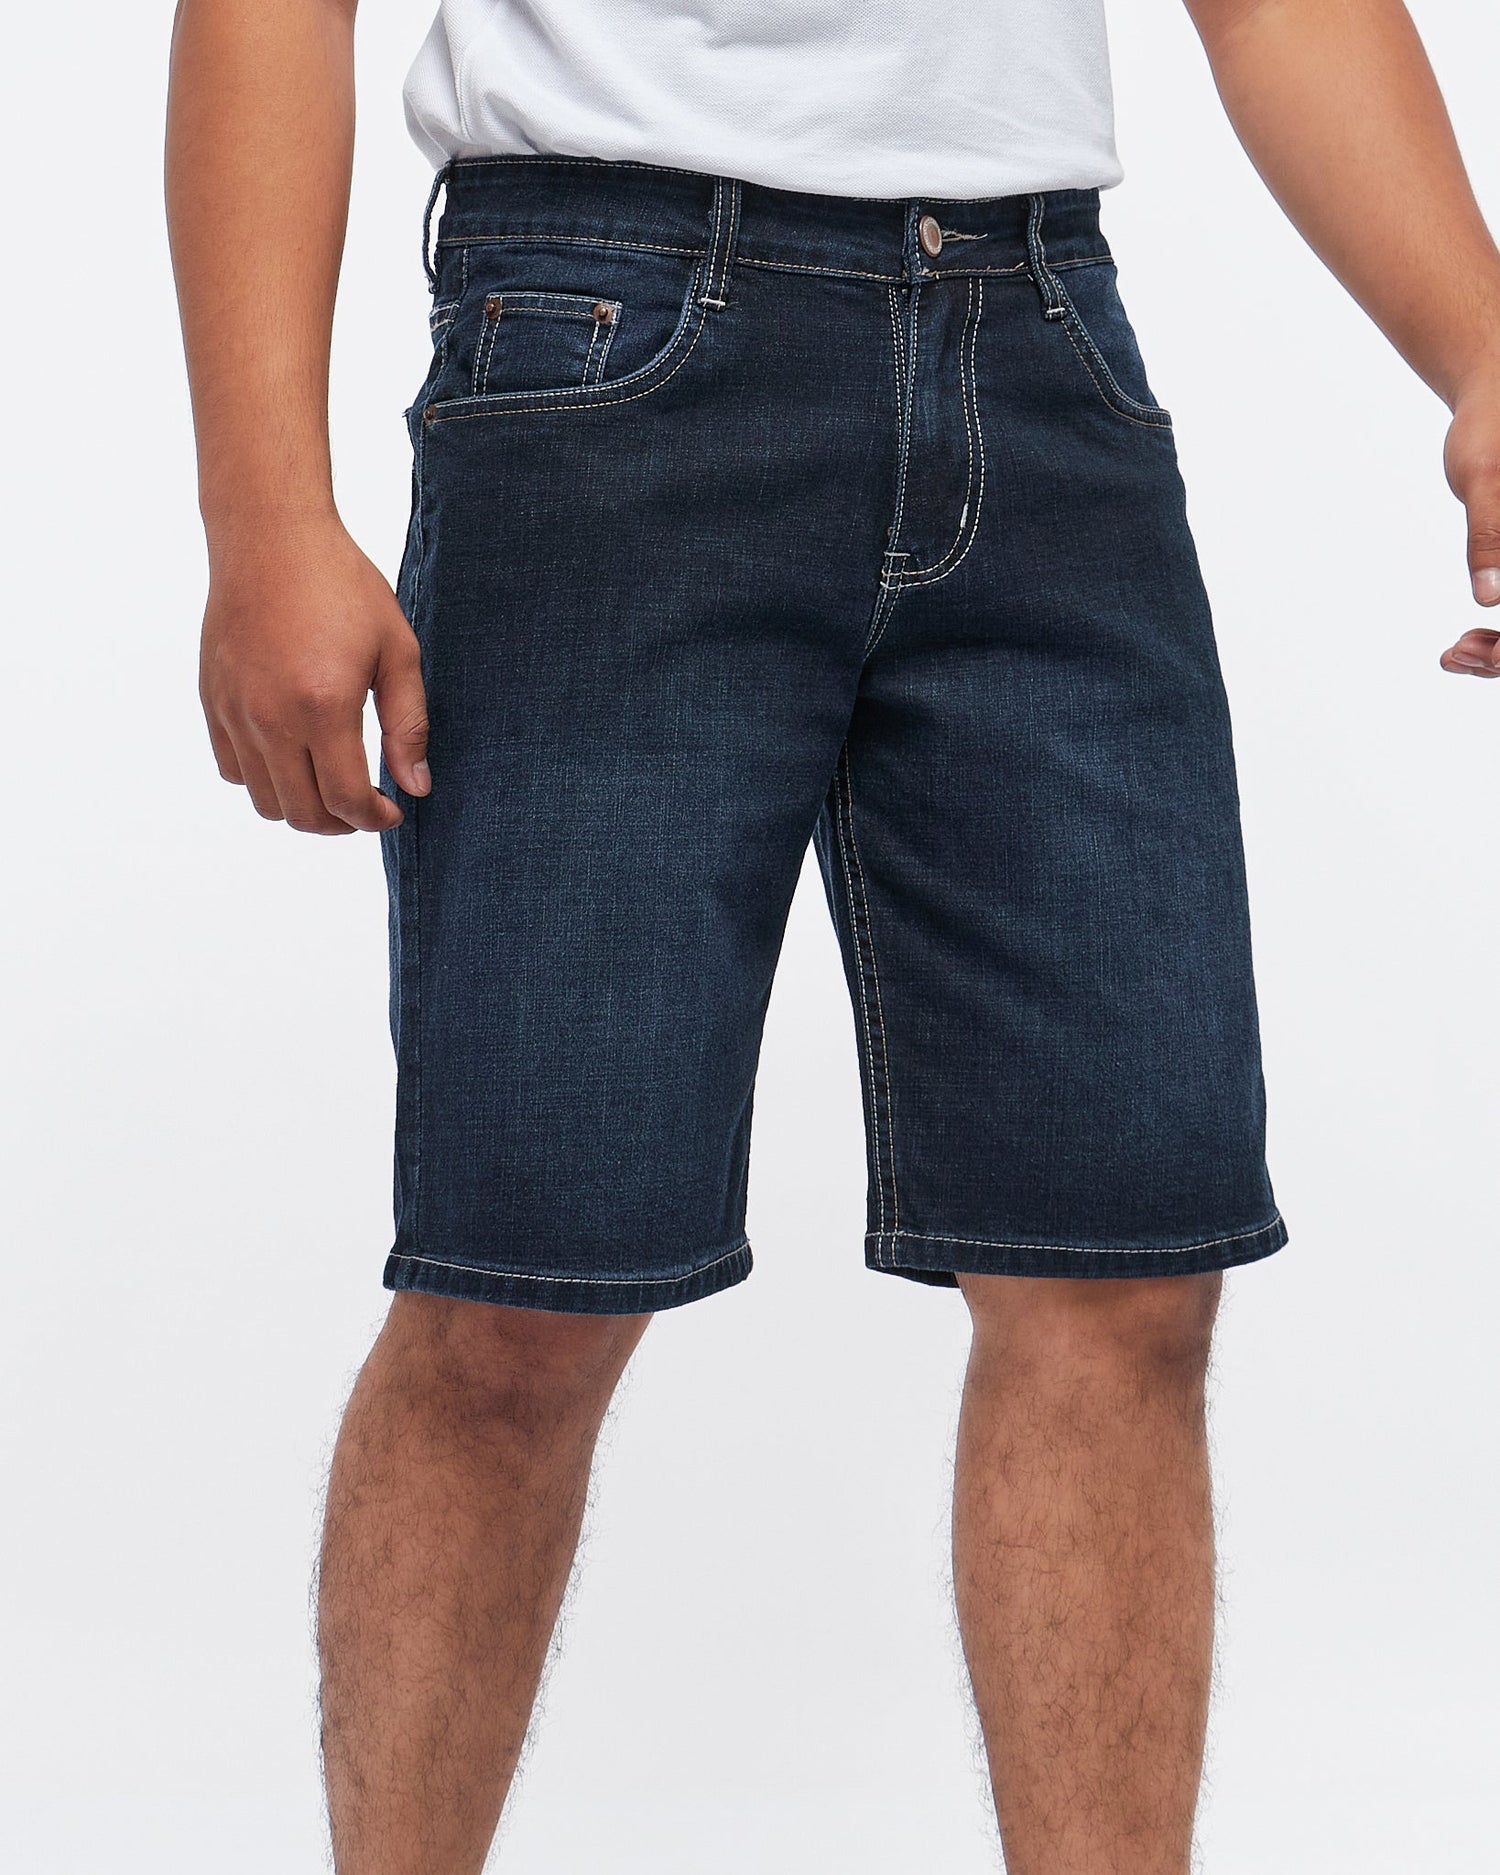 MOI OUTFIT-CK Men Short Jeans 17.50